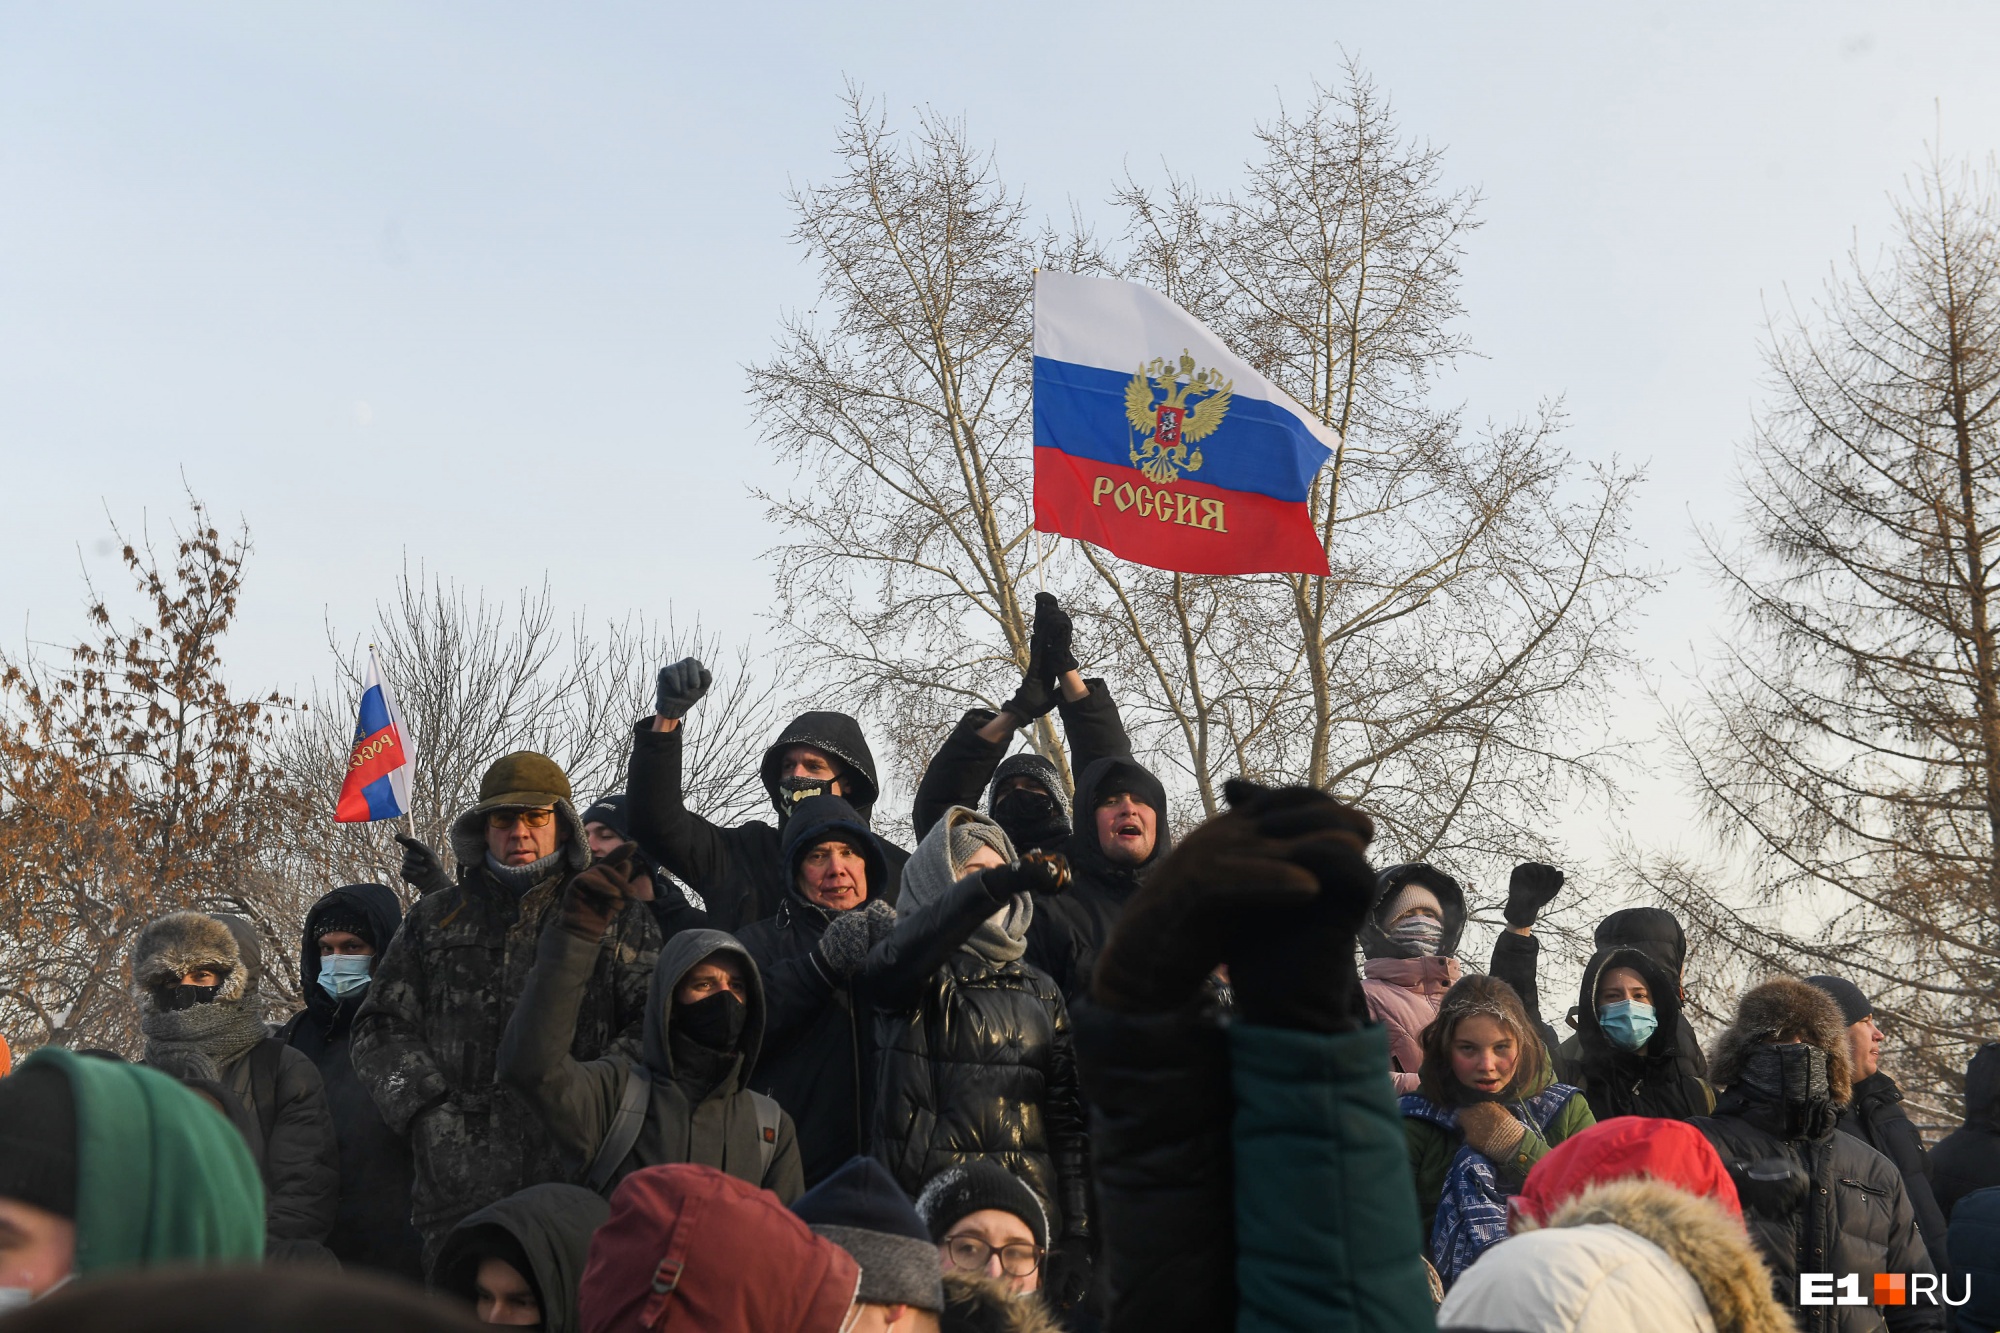 Недовольство властью и пандемия: почему акция в поддержку Навального собрала так много участников